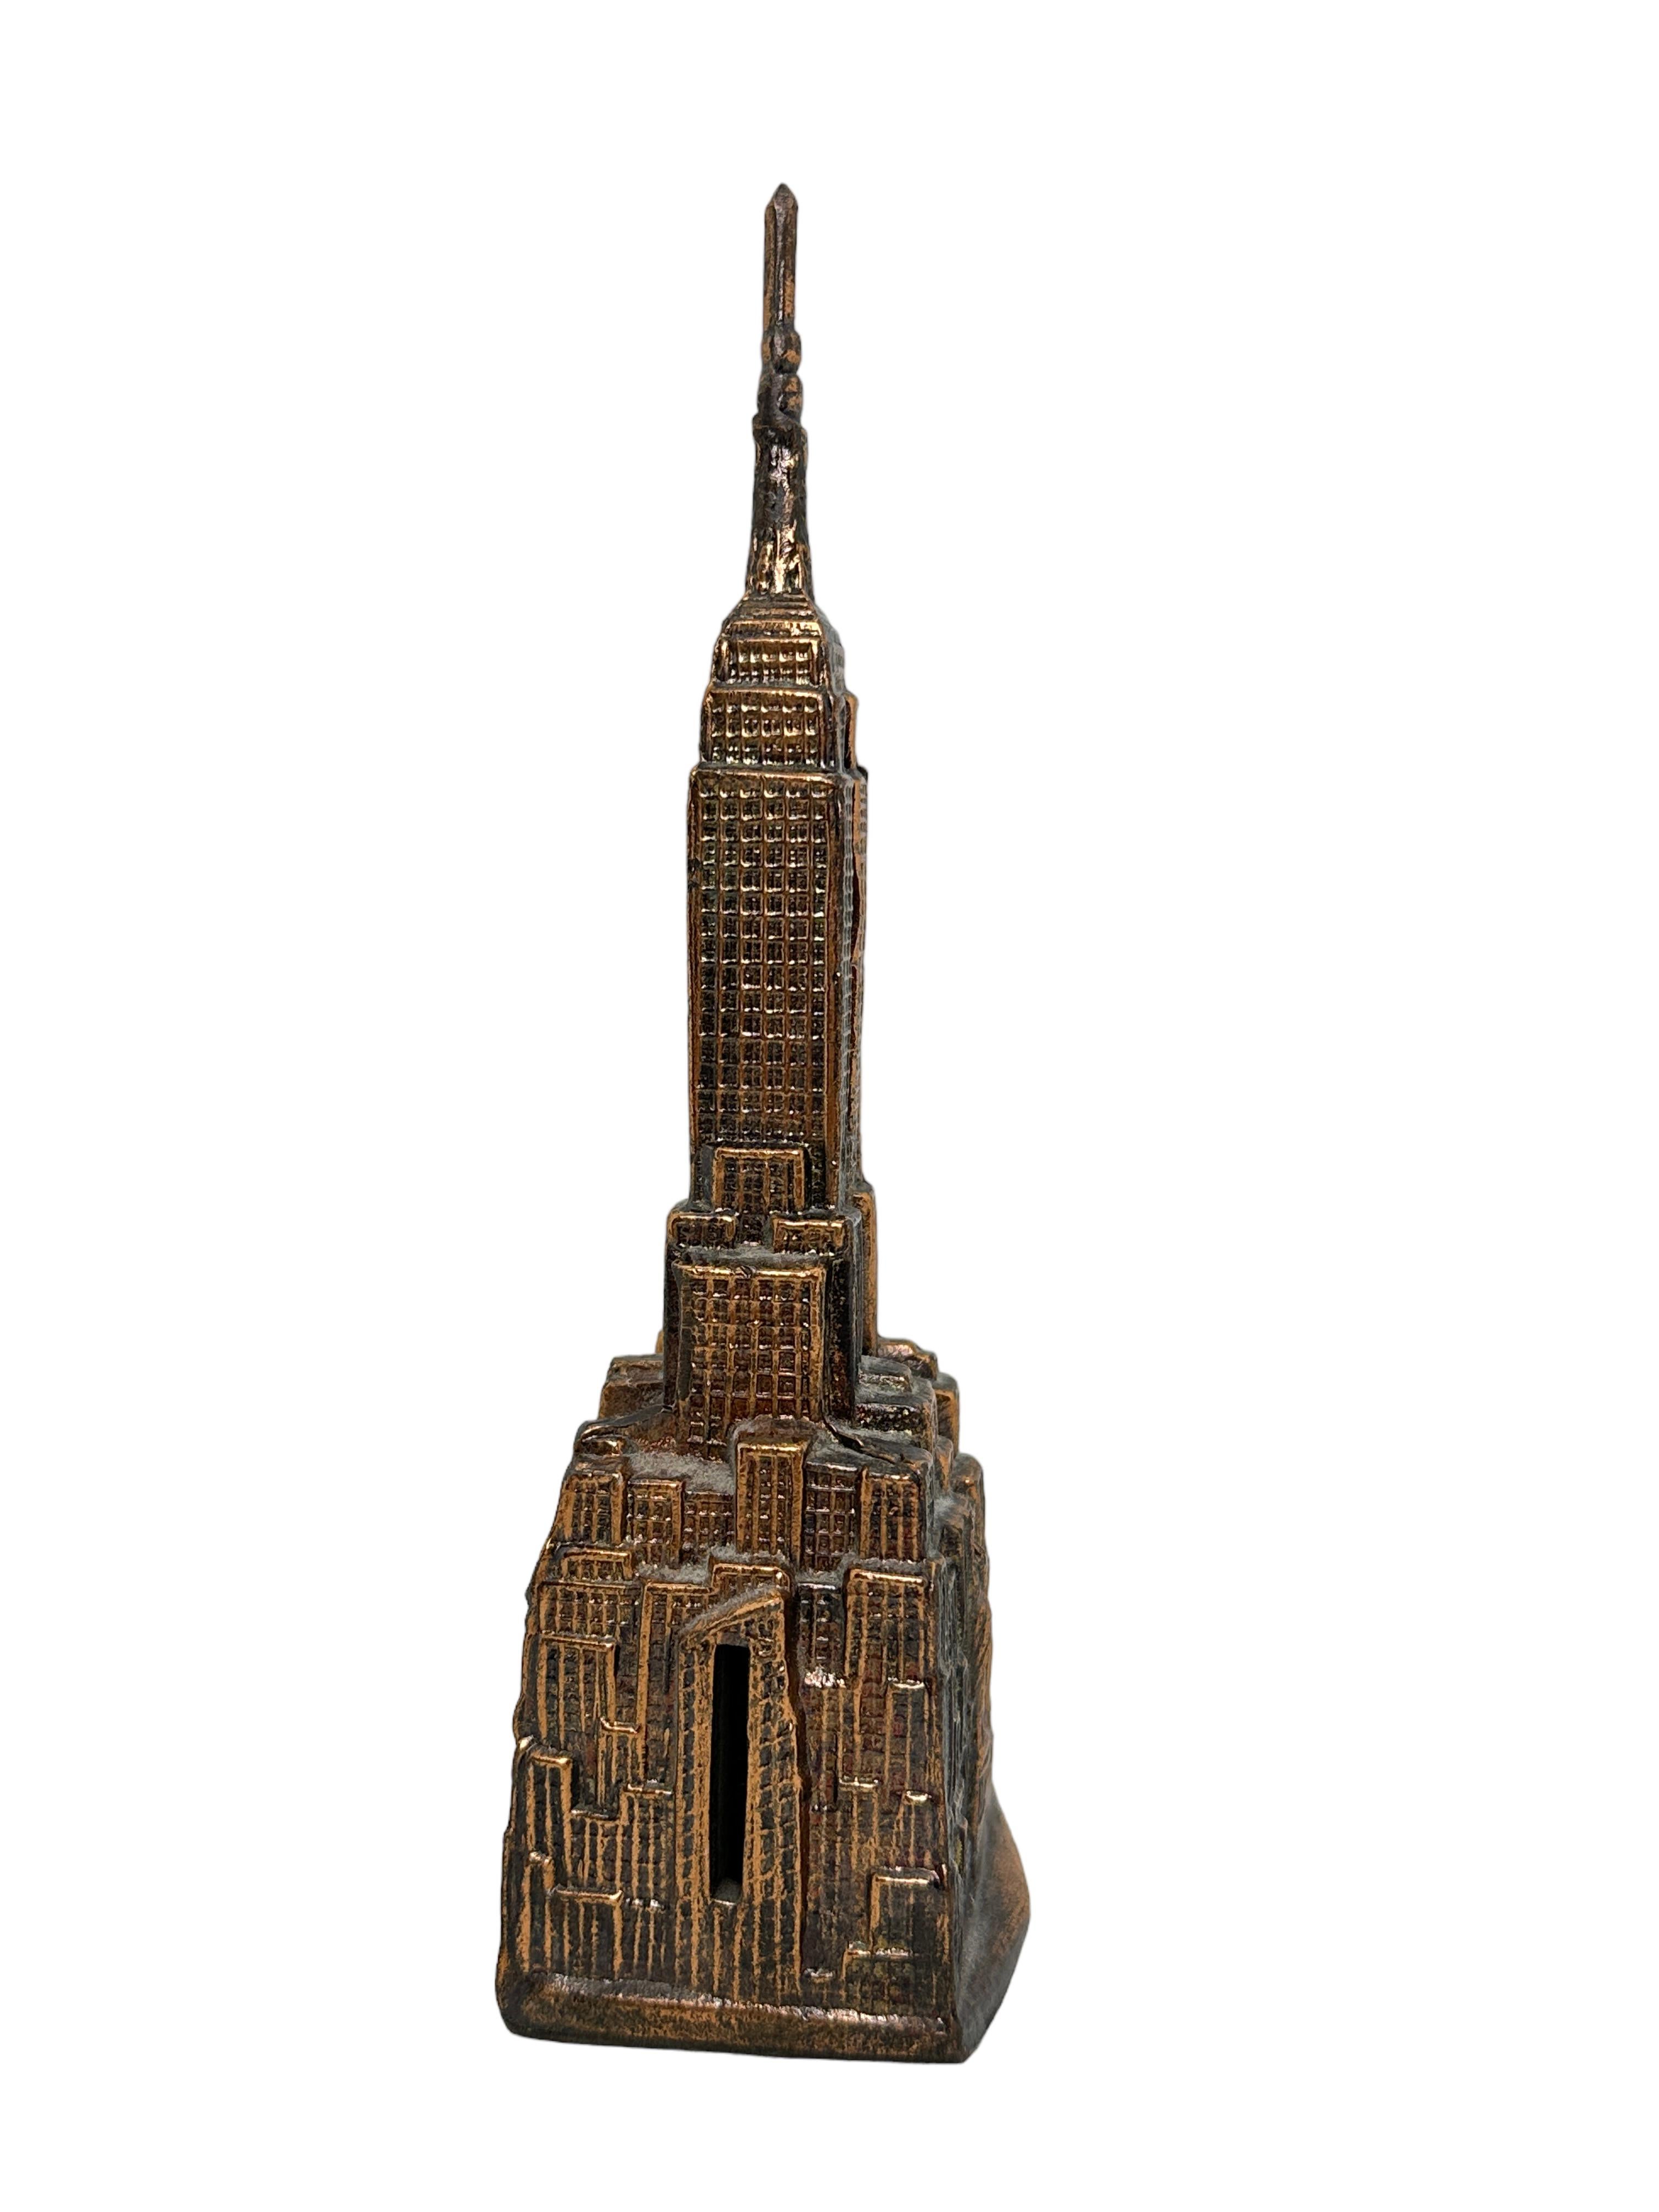 Wunderschöne Vintage-Spardose aus Metall. Diese Sammelbank in Form des New Yorker Empire State Buildings ist aus Kupfermetall gefertigt und 7 5/8